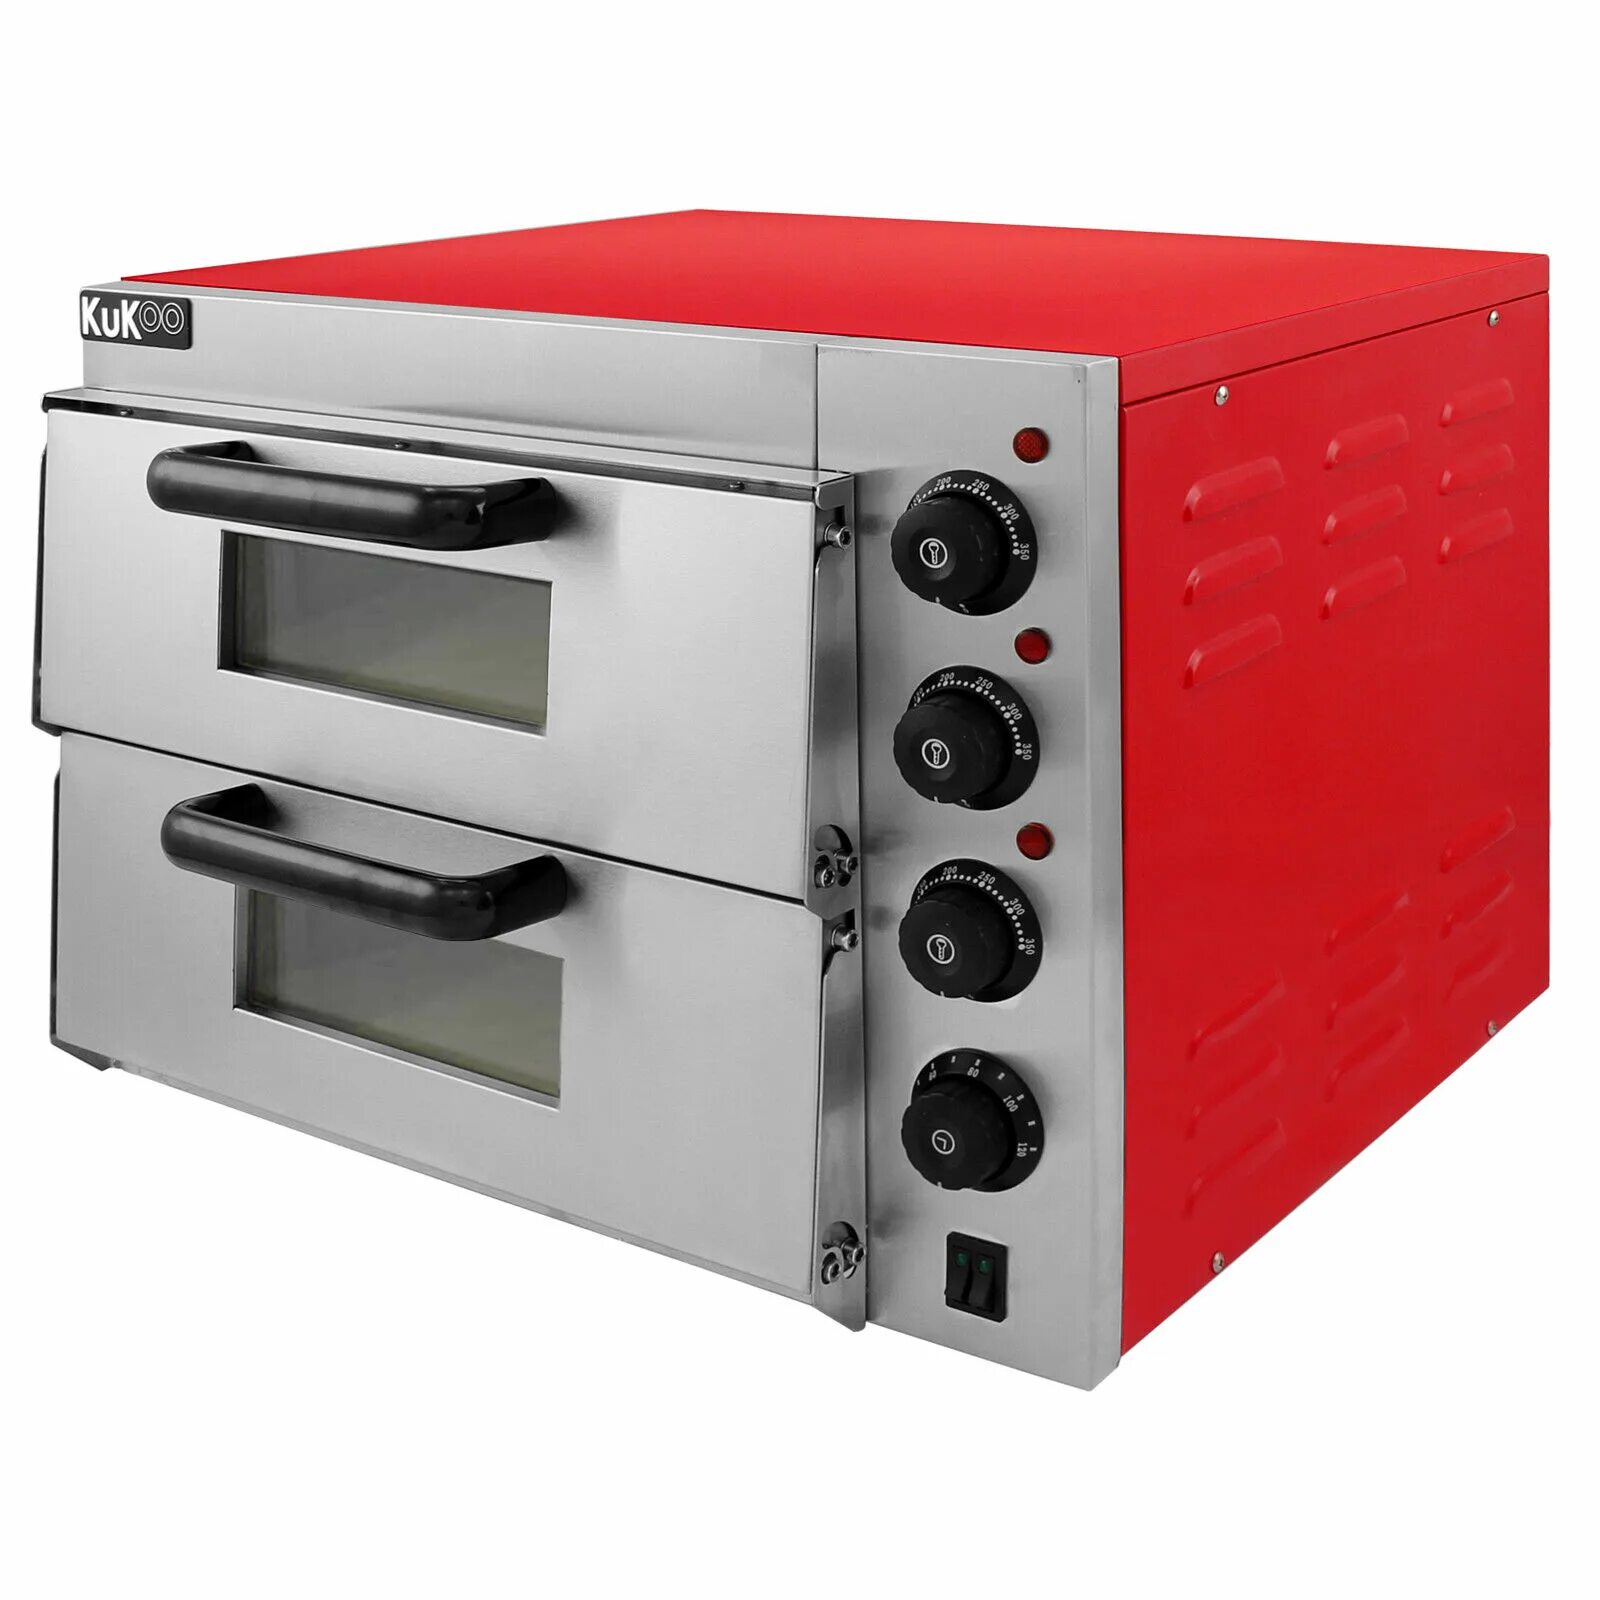 Купить духовку для пиццы. Пицца печь Electric pizza Oven. Пицца печь GASTRORAG. Печь для пиццы GASTRORAG Ep-2rr. Пицца печь GASTRORAG gn1+1 ТЭН.